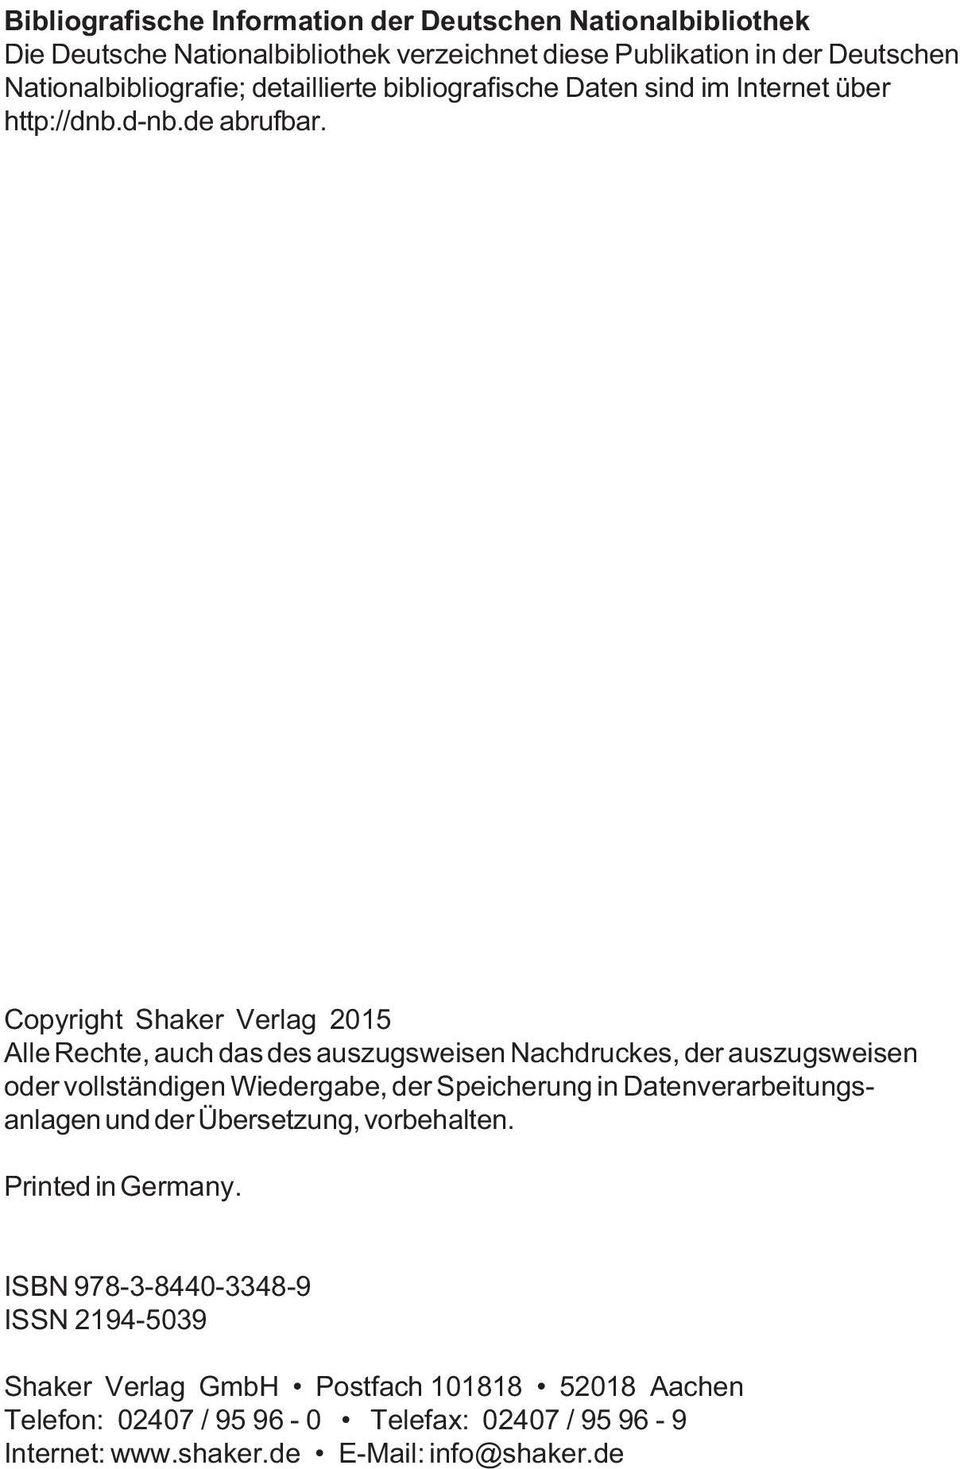 Copyright Shaker Verlag 2015 Alle Rechte, auch das des auszugsweisen Nachdruckes, der auszugsweisen oder vollständigen Wiedergabe, der Speicherung in